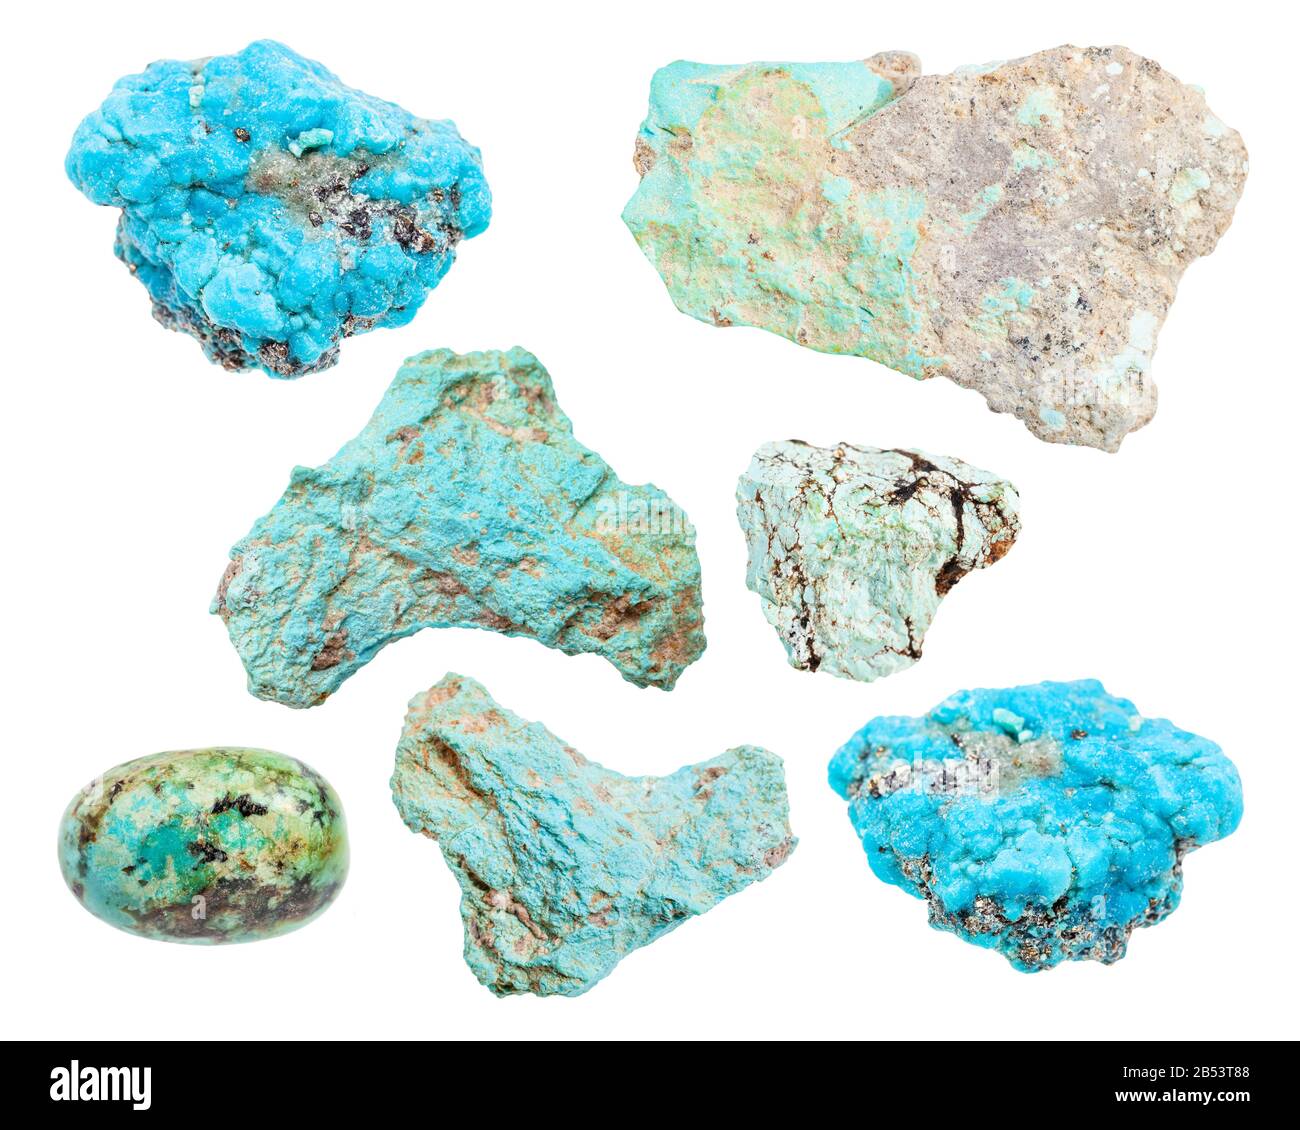 set of various Turquoise gemstones isolated on white background Stock Photo